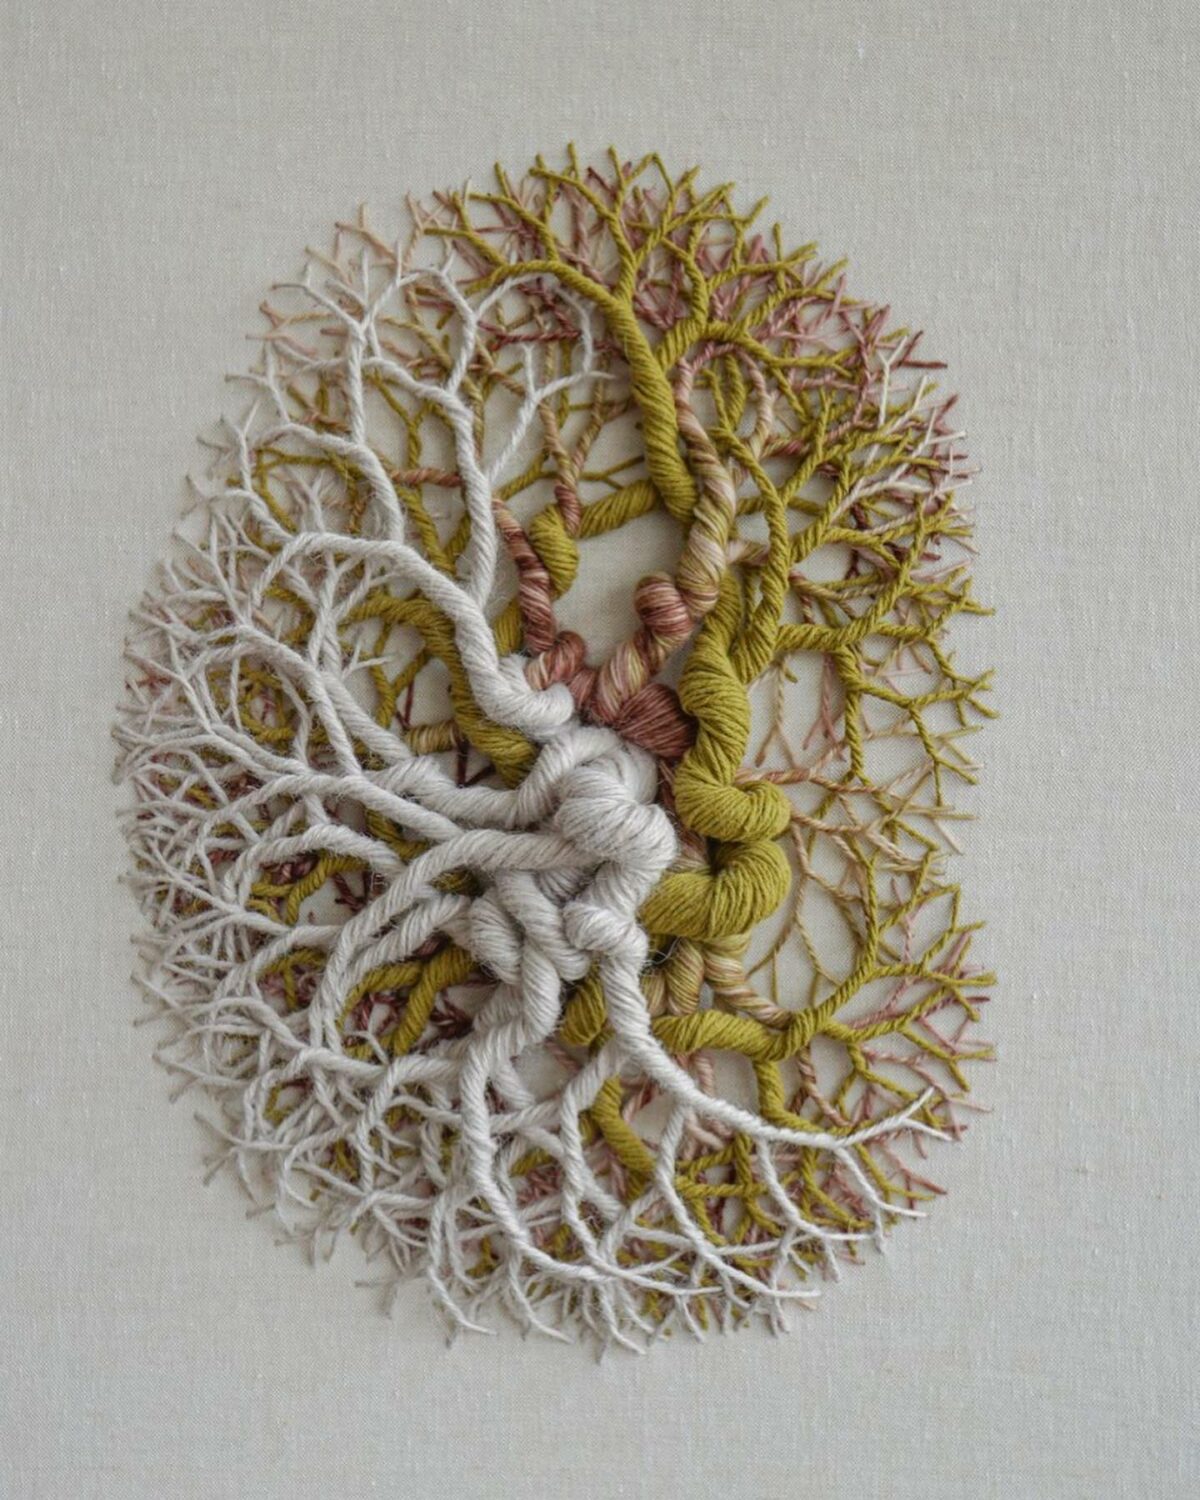 Ciclotramas: hypnotizing tree and roots-like fiber artworks by Janaina Mello Landini